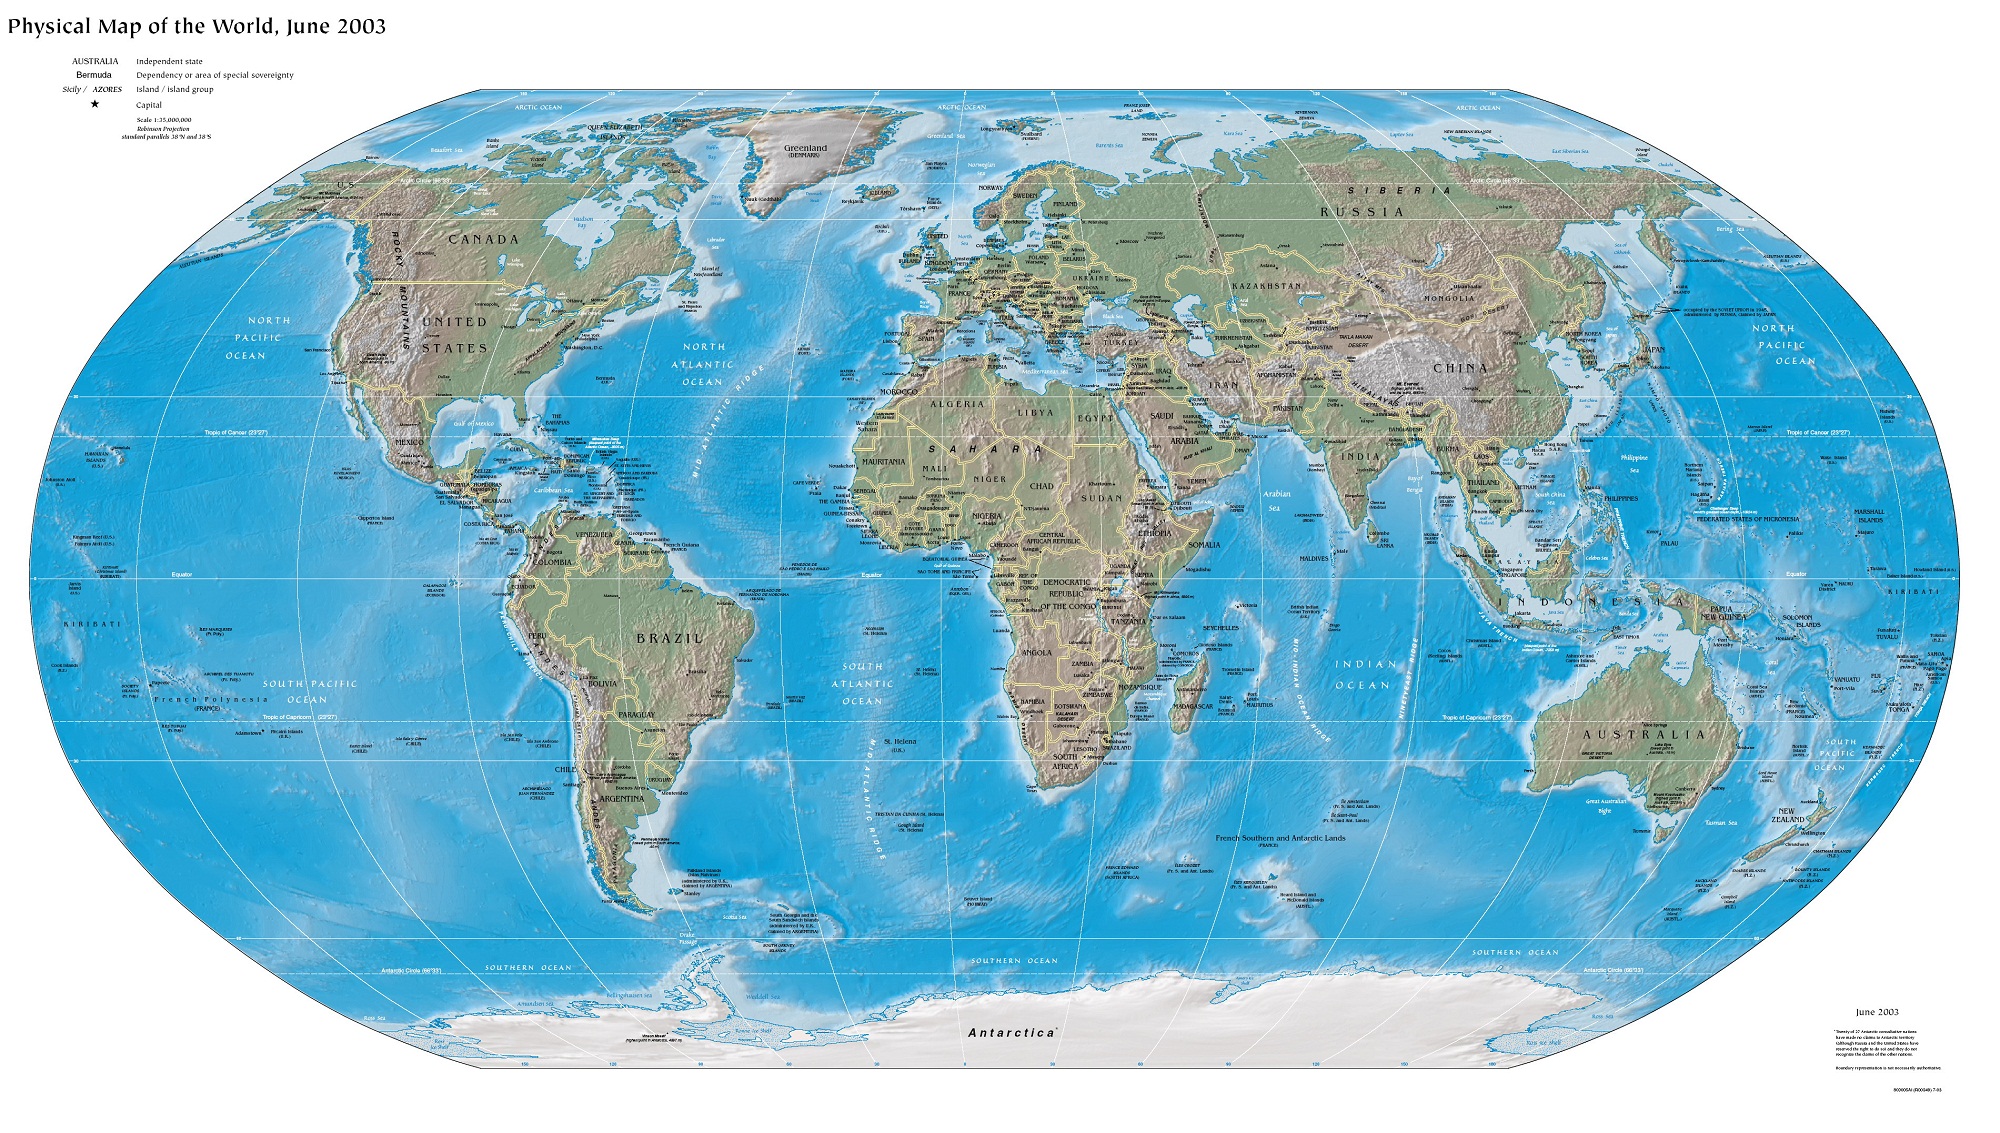 Dünya Haritası